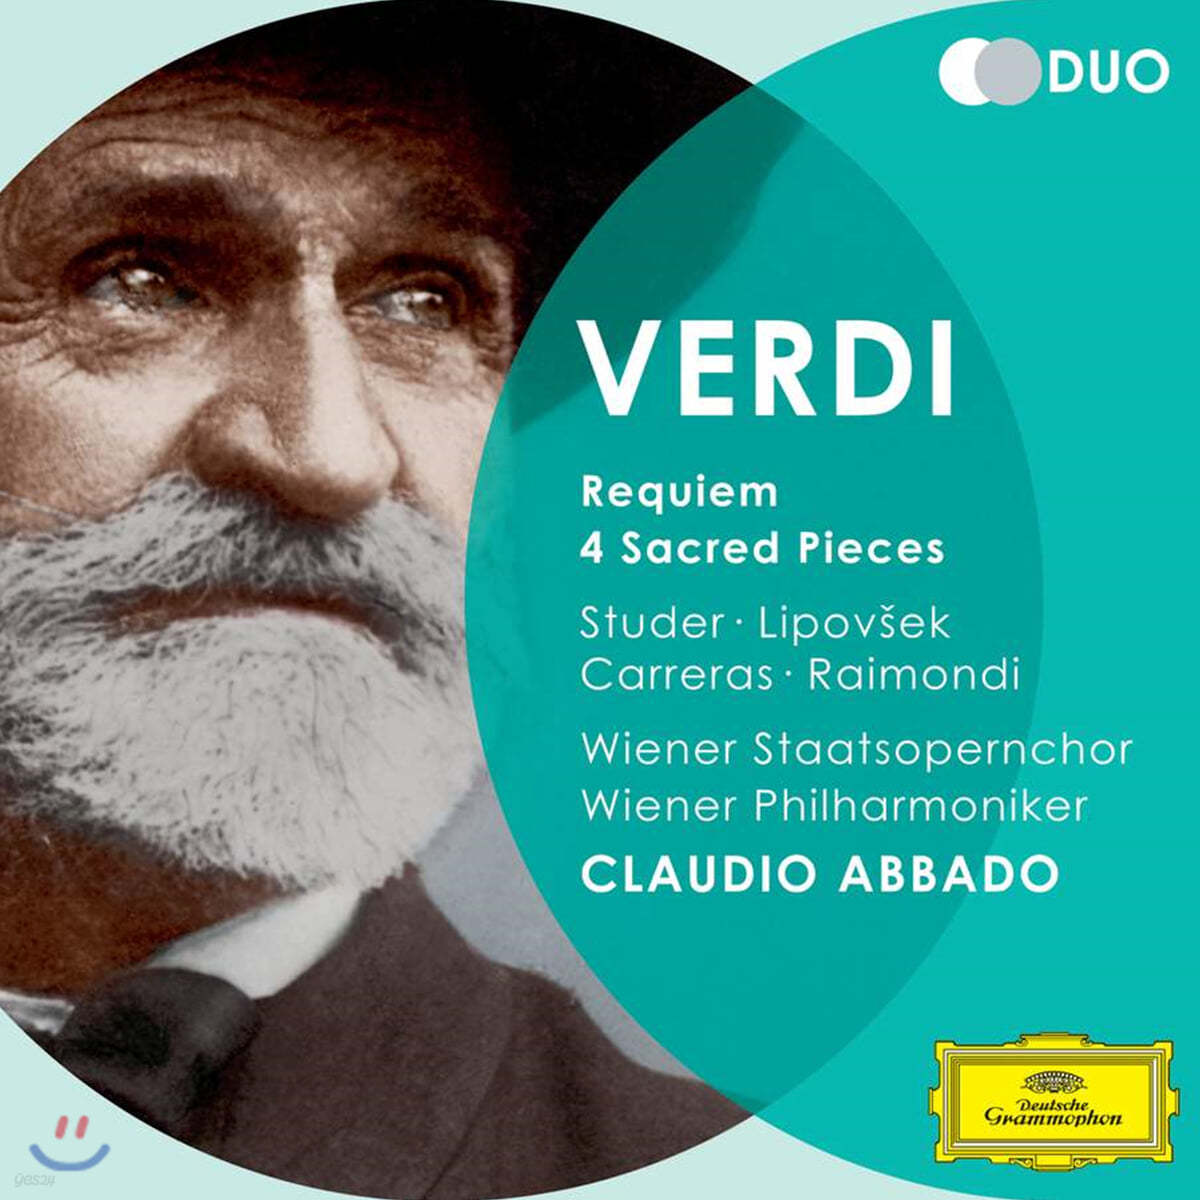 Claudio Abbado 베르디: 레퀴엠, 네 개의 성가곡 (Verdi: Requiem, Quattro Pezzi Sacri)